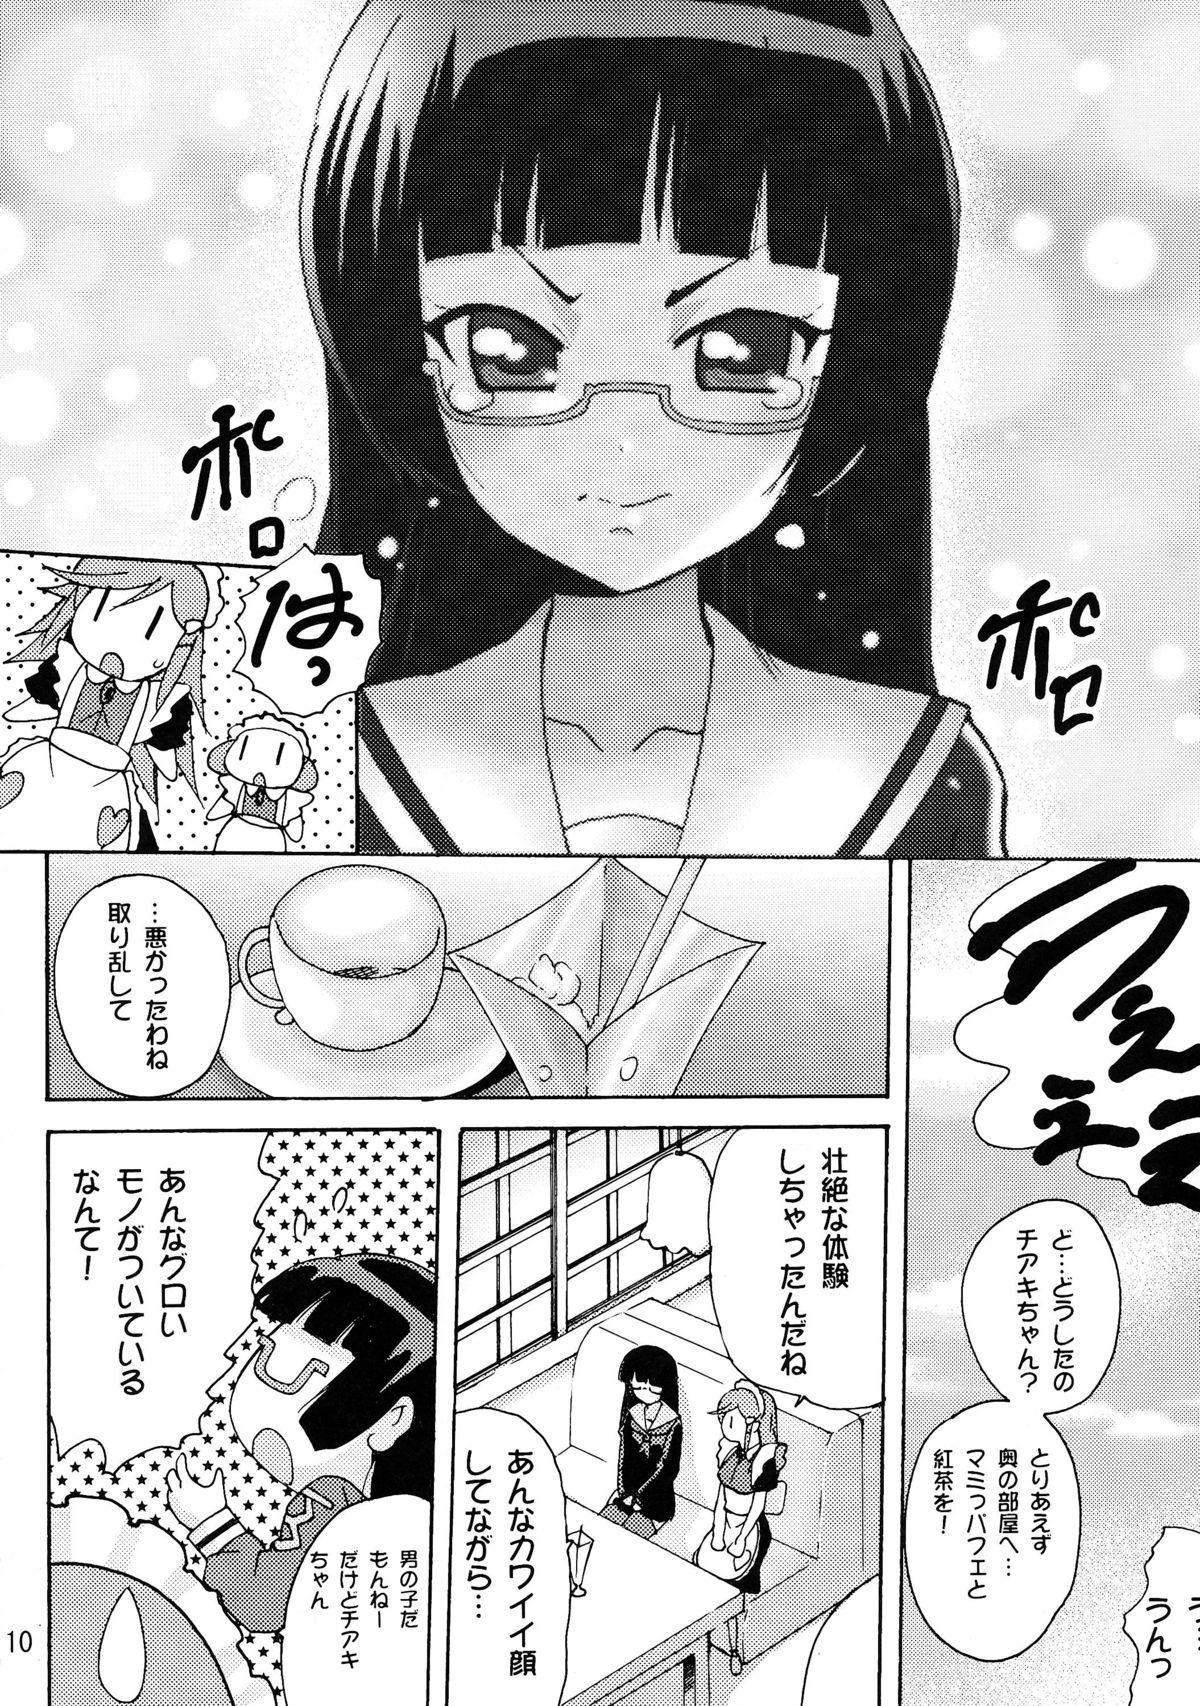 Blackmail Koisuru Uchuu Kaizoku Musume - Mouretsu pirates Paja - Page 10